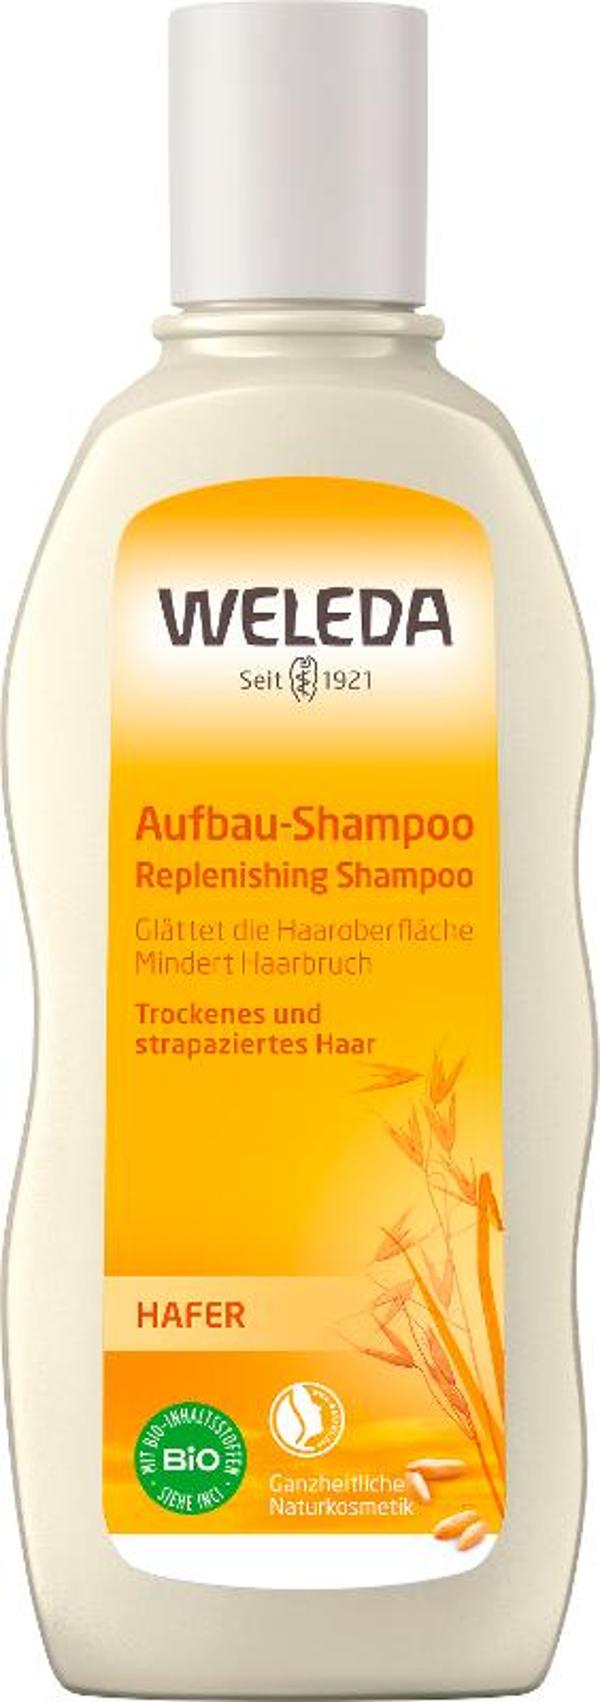 Produktfoto zu Hafer Aufbau Shampoo von Weleda